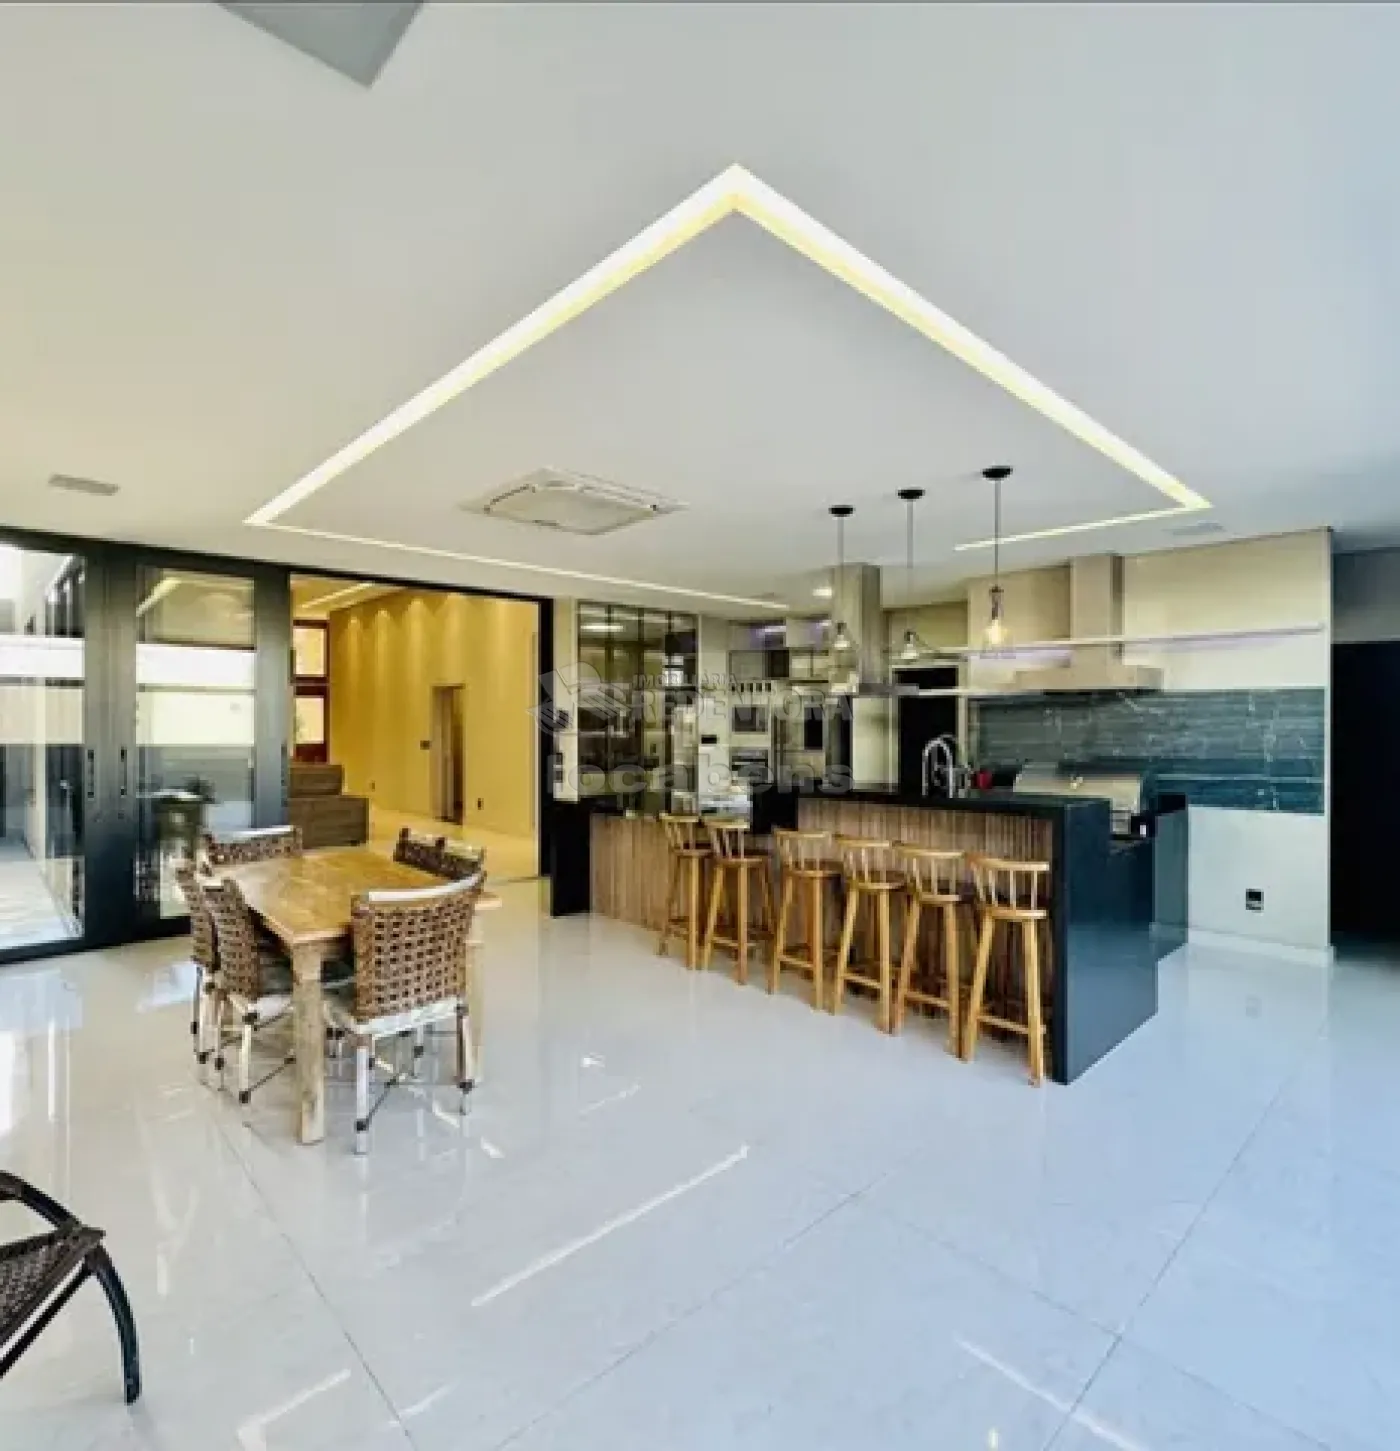 Alugar Casa / Condomínio em São José do Rio Preto R$ 7.500,00 - Foto 4